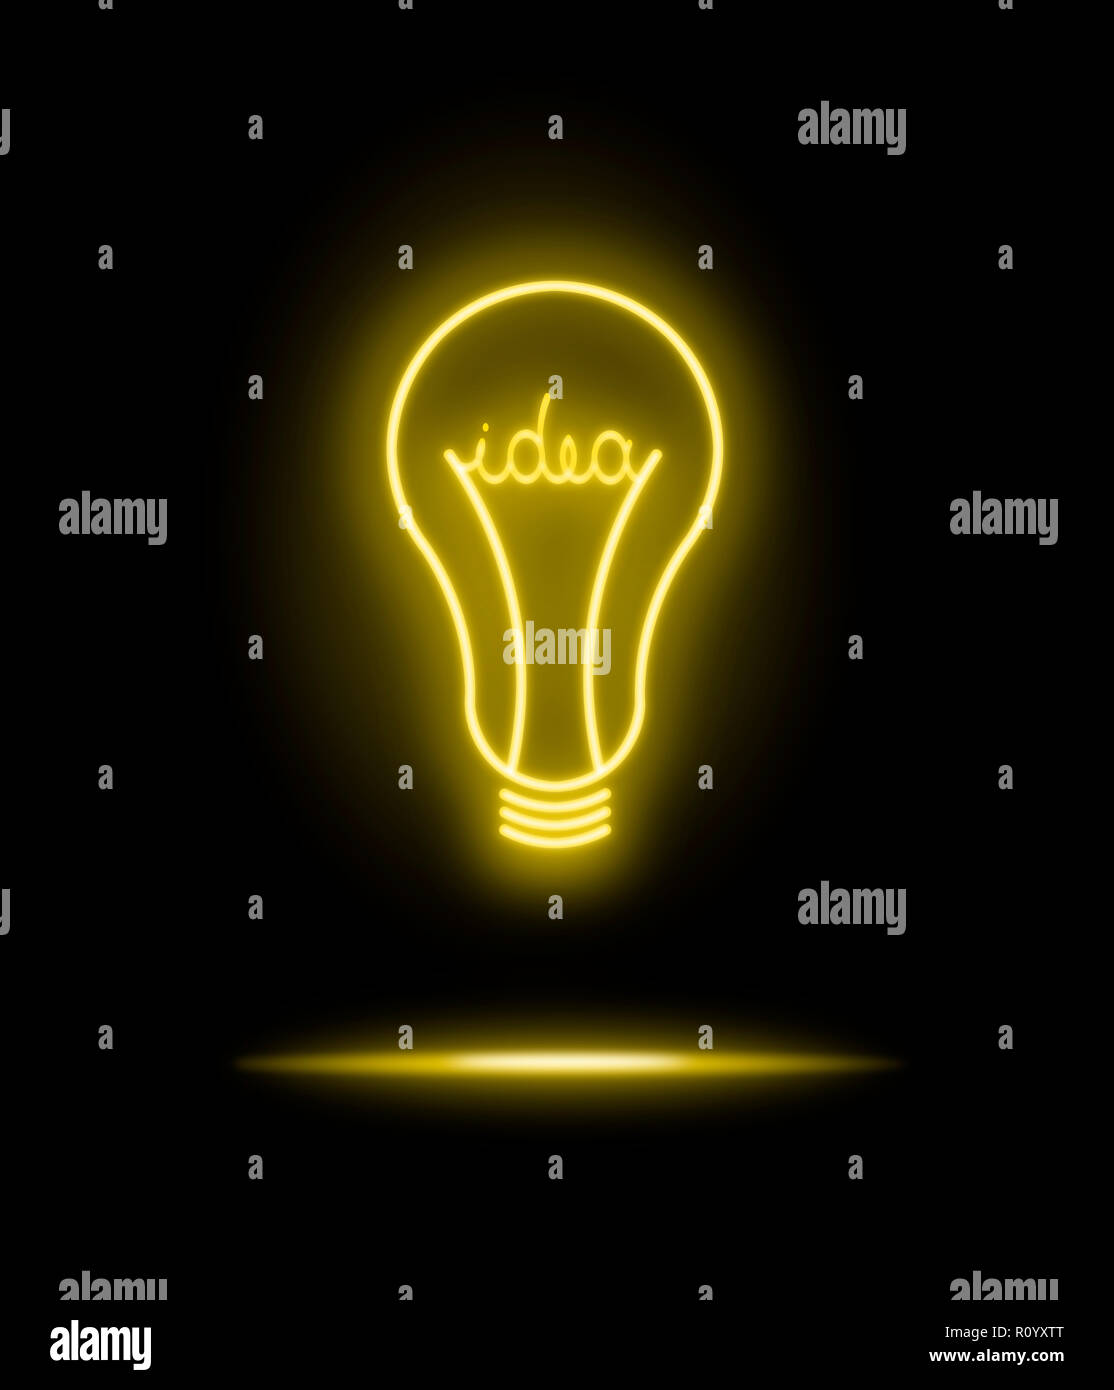 Néon jaune lumineux ampoule électrique symbole avec le mot idée, sur fond noir Banque D'Images